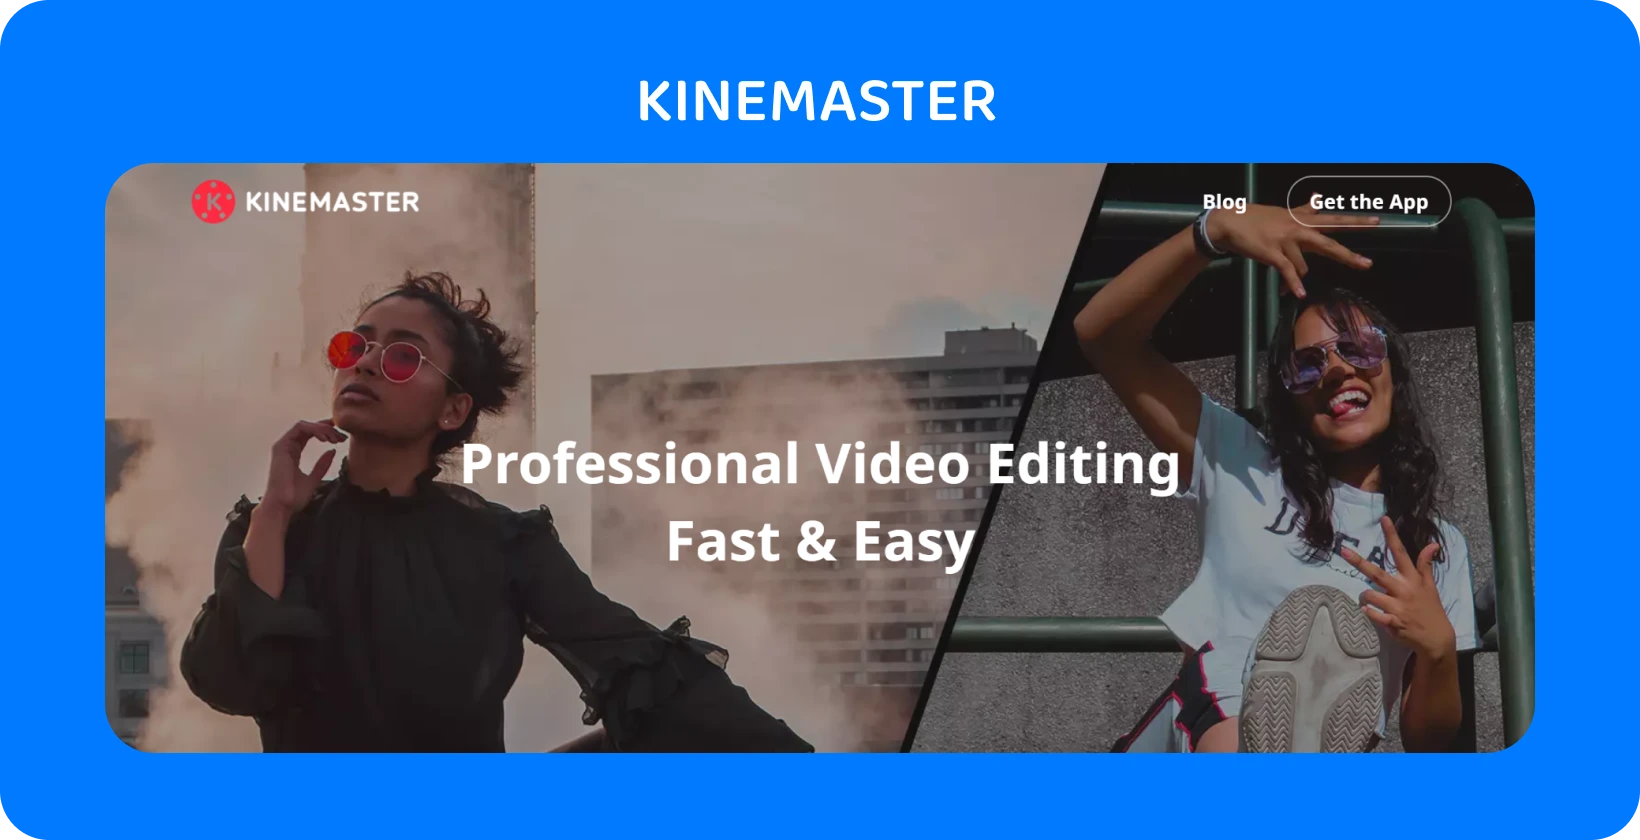 KineMaster sovellusmainoksen, jossa kaksi mallia poseeraa, korostaen ammattimaista videoeditointia, joka on nopeaa ja helppoa.